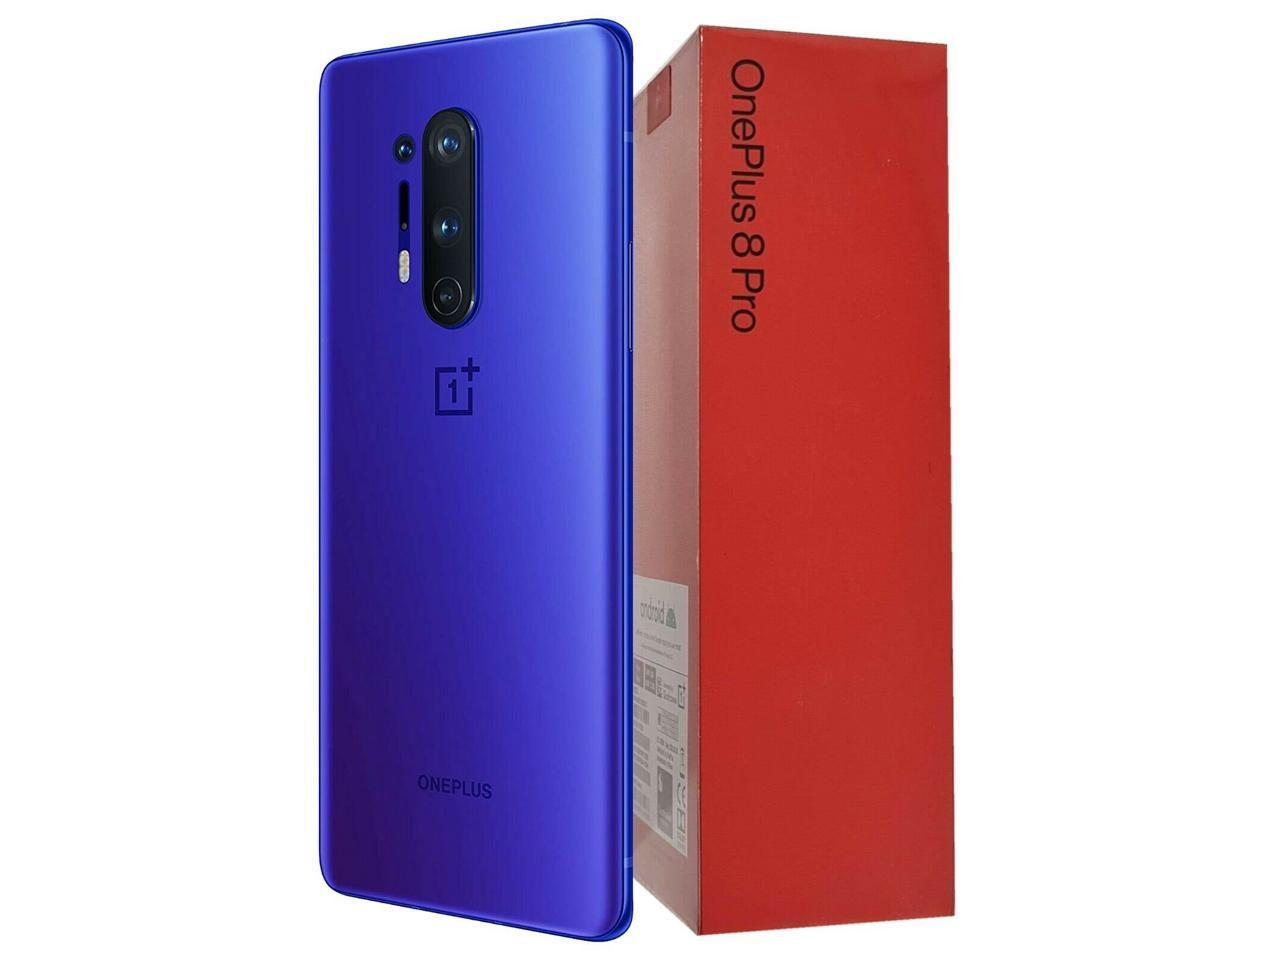 スマートフォン/携帯電話 スマートフォン本体 OnePlus 8 Pro (5G) Dual-SIM IN2023 256GB/12GB RAM (GSM + CDMA) Factory  Unlocked Android Smartphone (Ultramarine Blue) - International Version